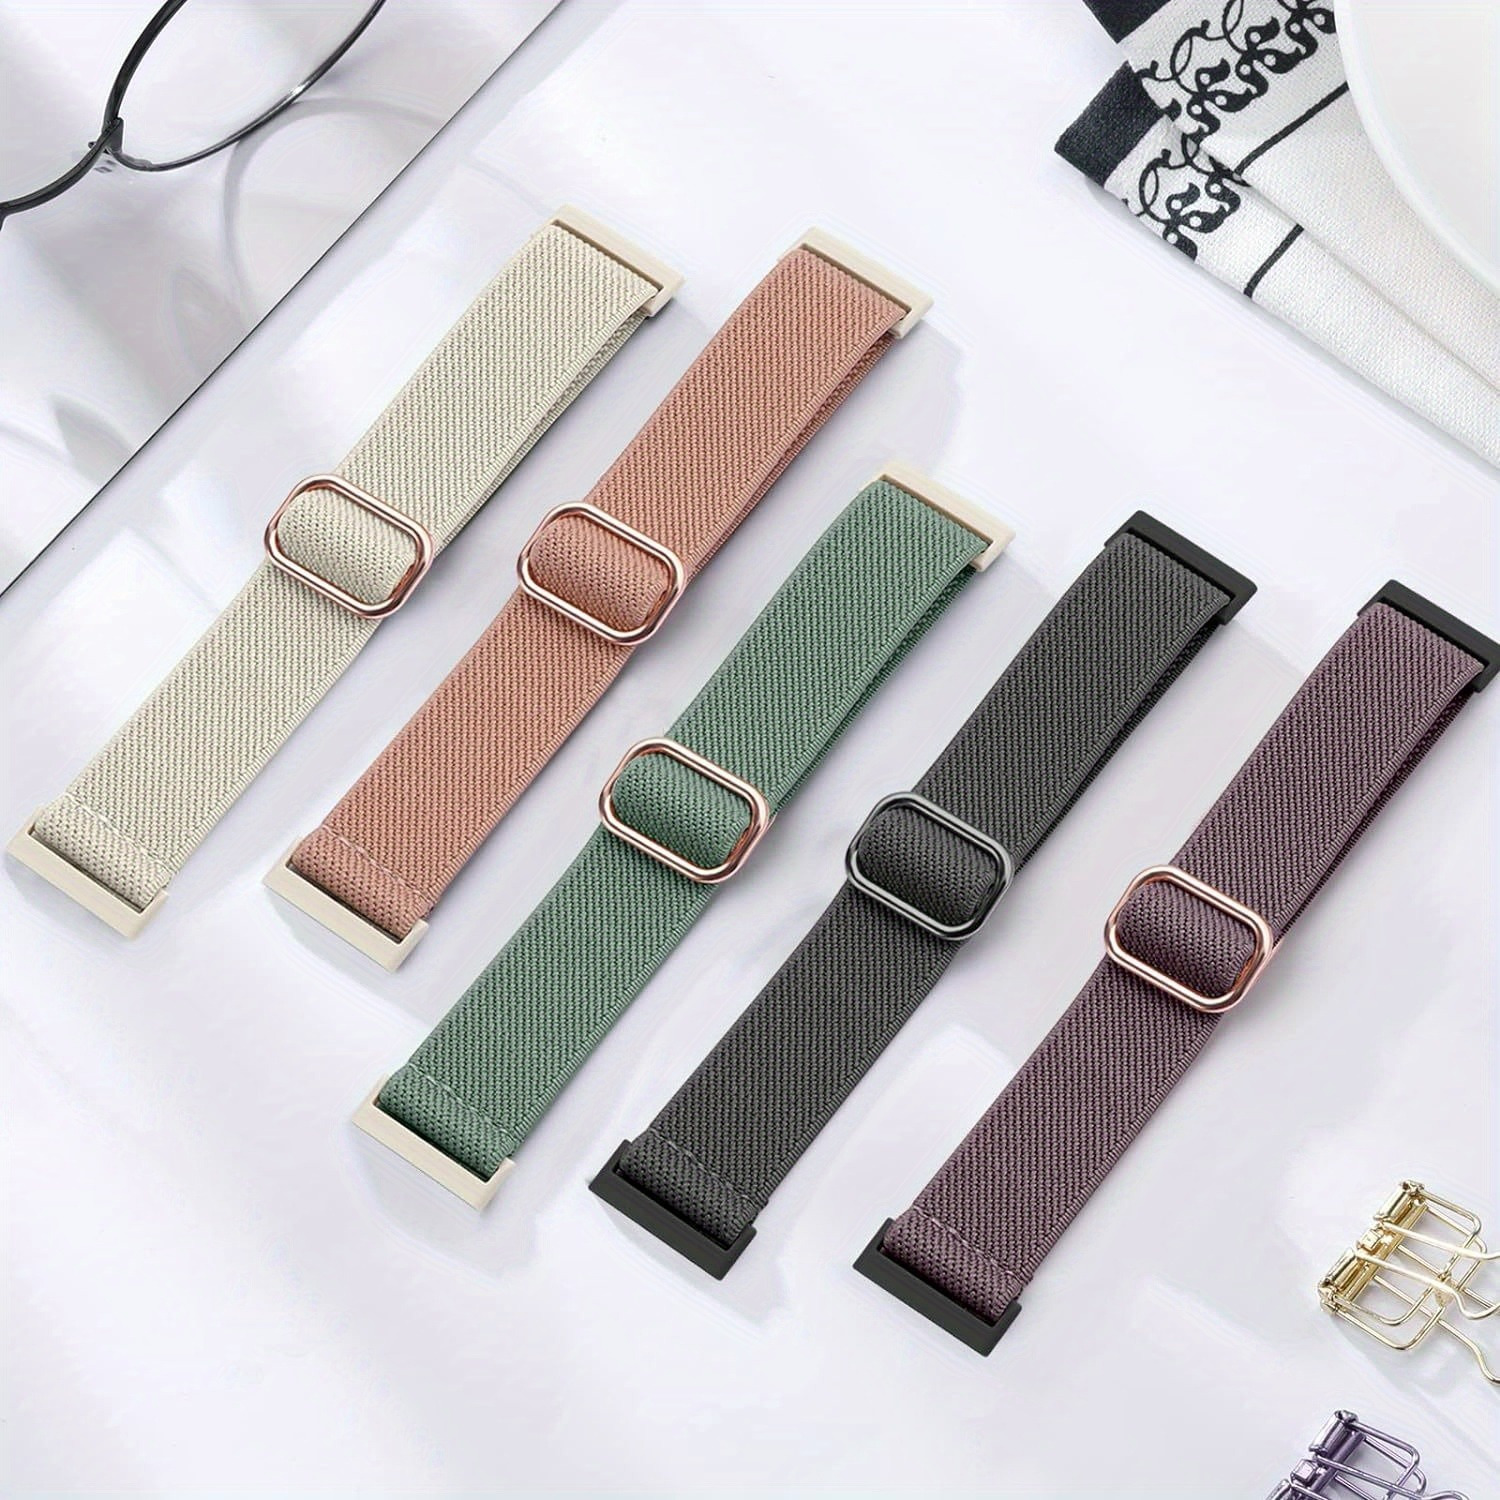 Paquet de 5 bracelets de rechange en silicone souple pour femmes,  compatibles avec le bracelet charge 5 de Fitbit